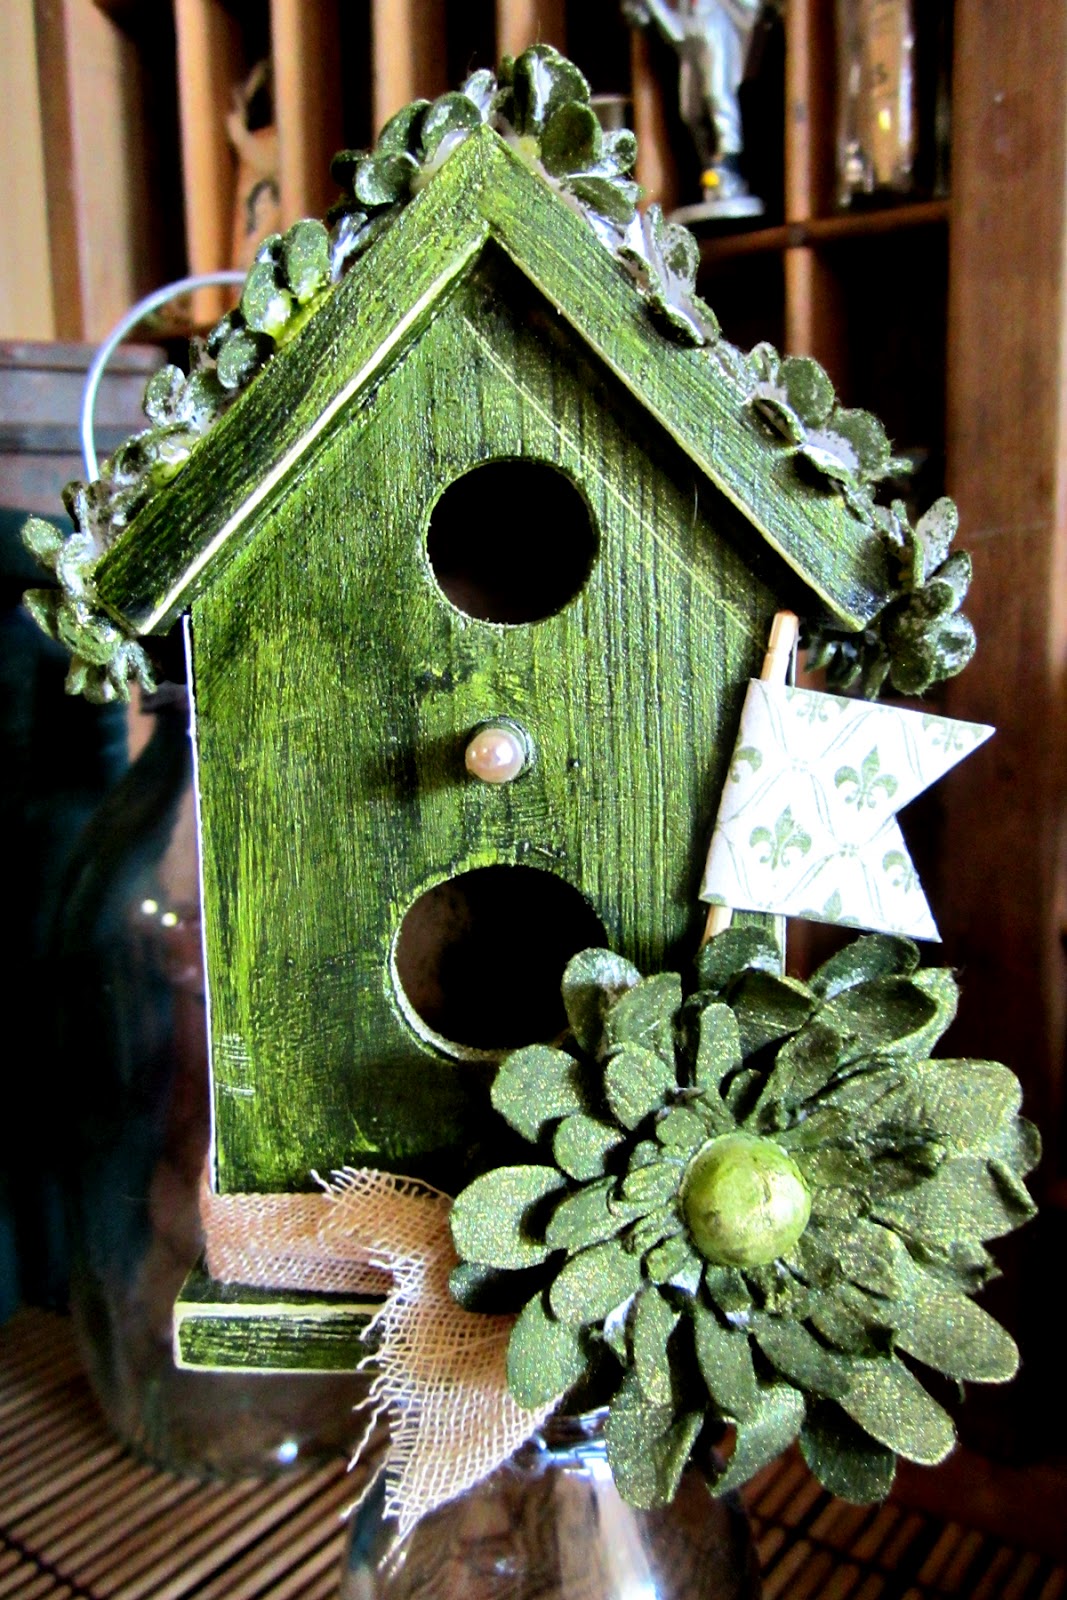 kerrie gurney : Craft Concepts - Wooden Birdhouses